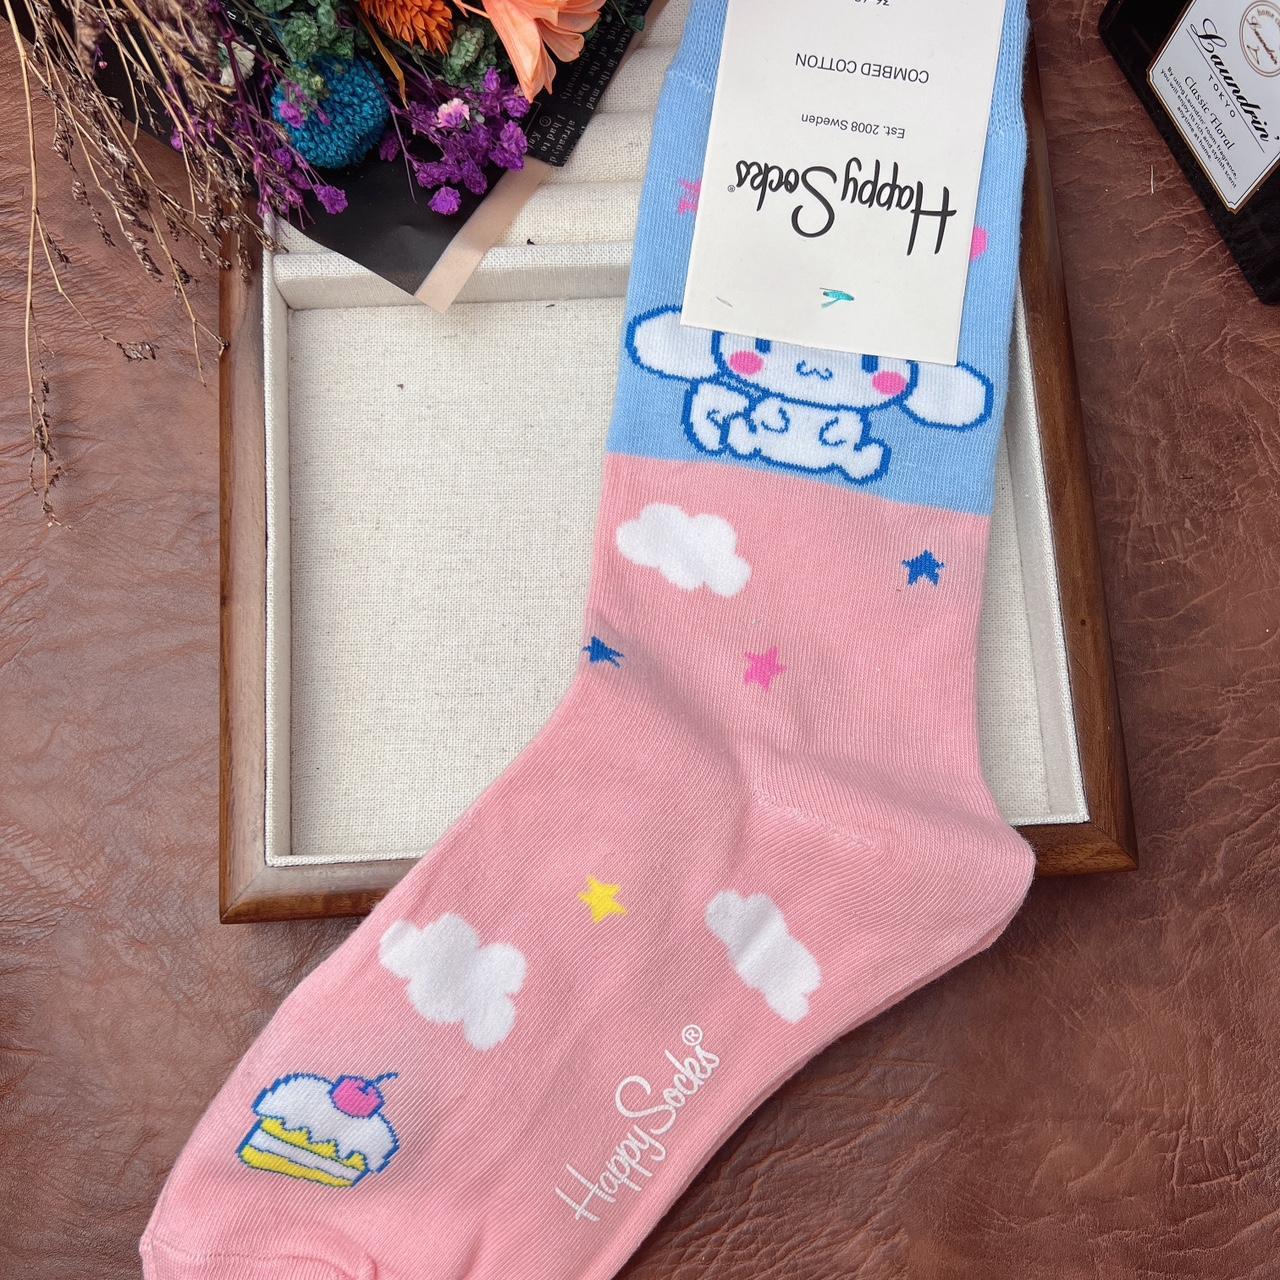 Happy Socks women Cotton socks Free size:US 5-10 - Depop